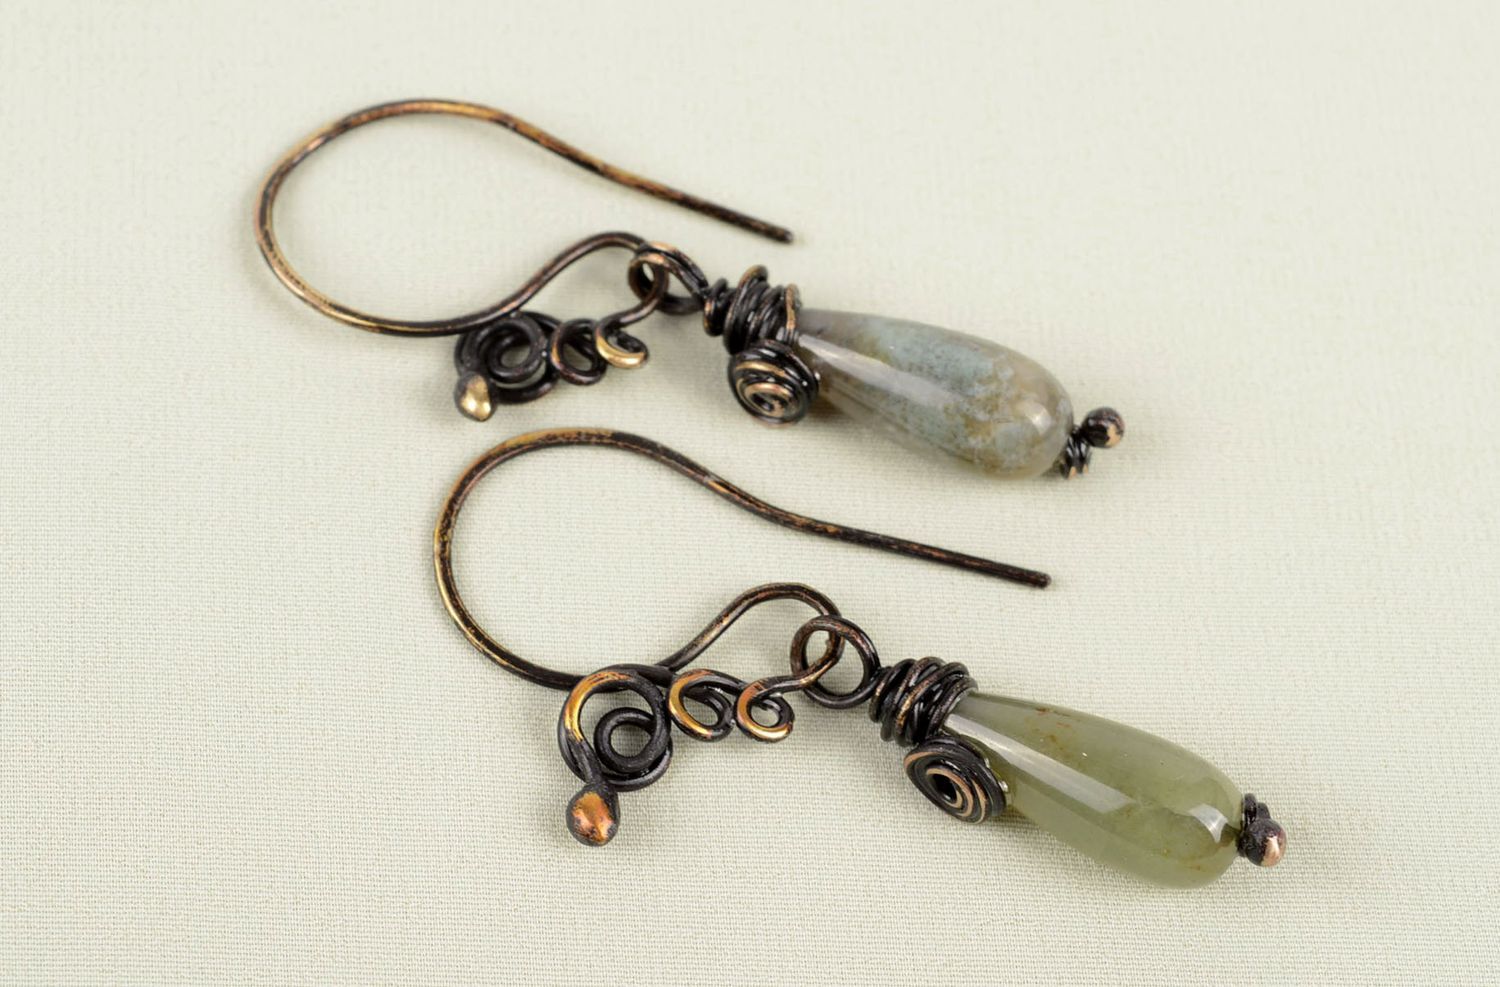 Handmade earrings unusual accessory copper jewelry gift ideas unusual earrings photo 5